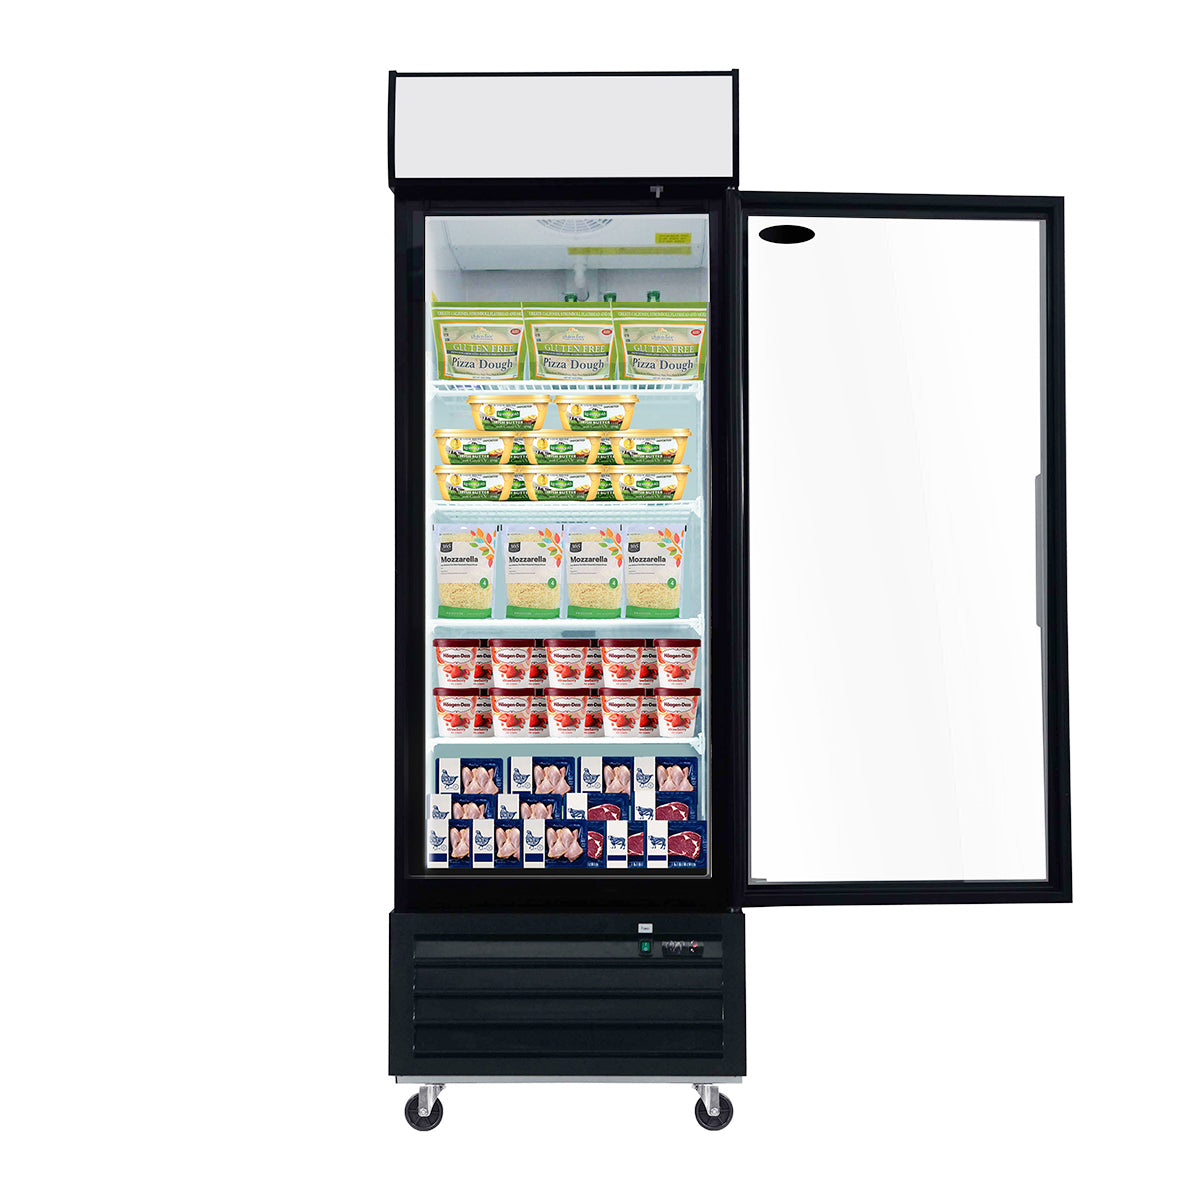 ORIKOOL SD690F 27" Single Swing Glass Door Merchandiser Freezer 19.2 cu.ft. Commercial Freezer with LED Top Panel, Black